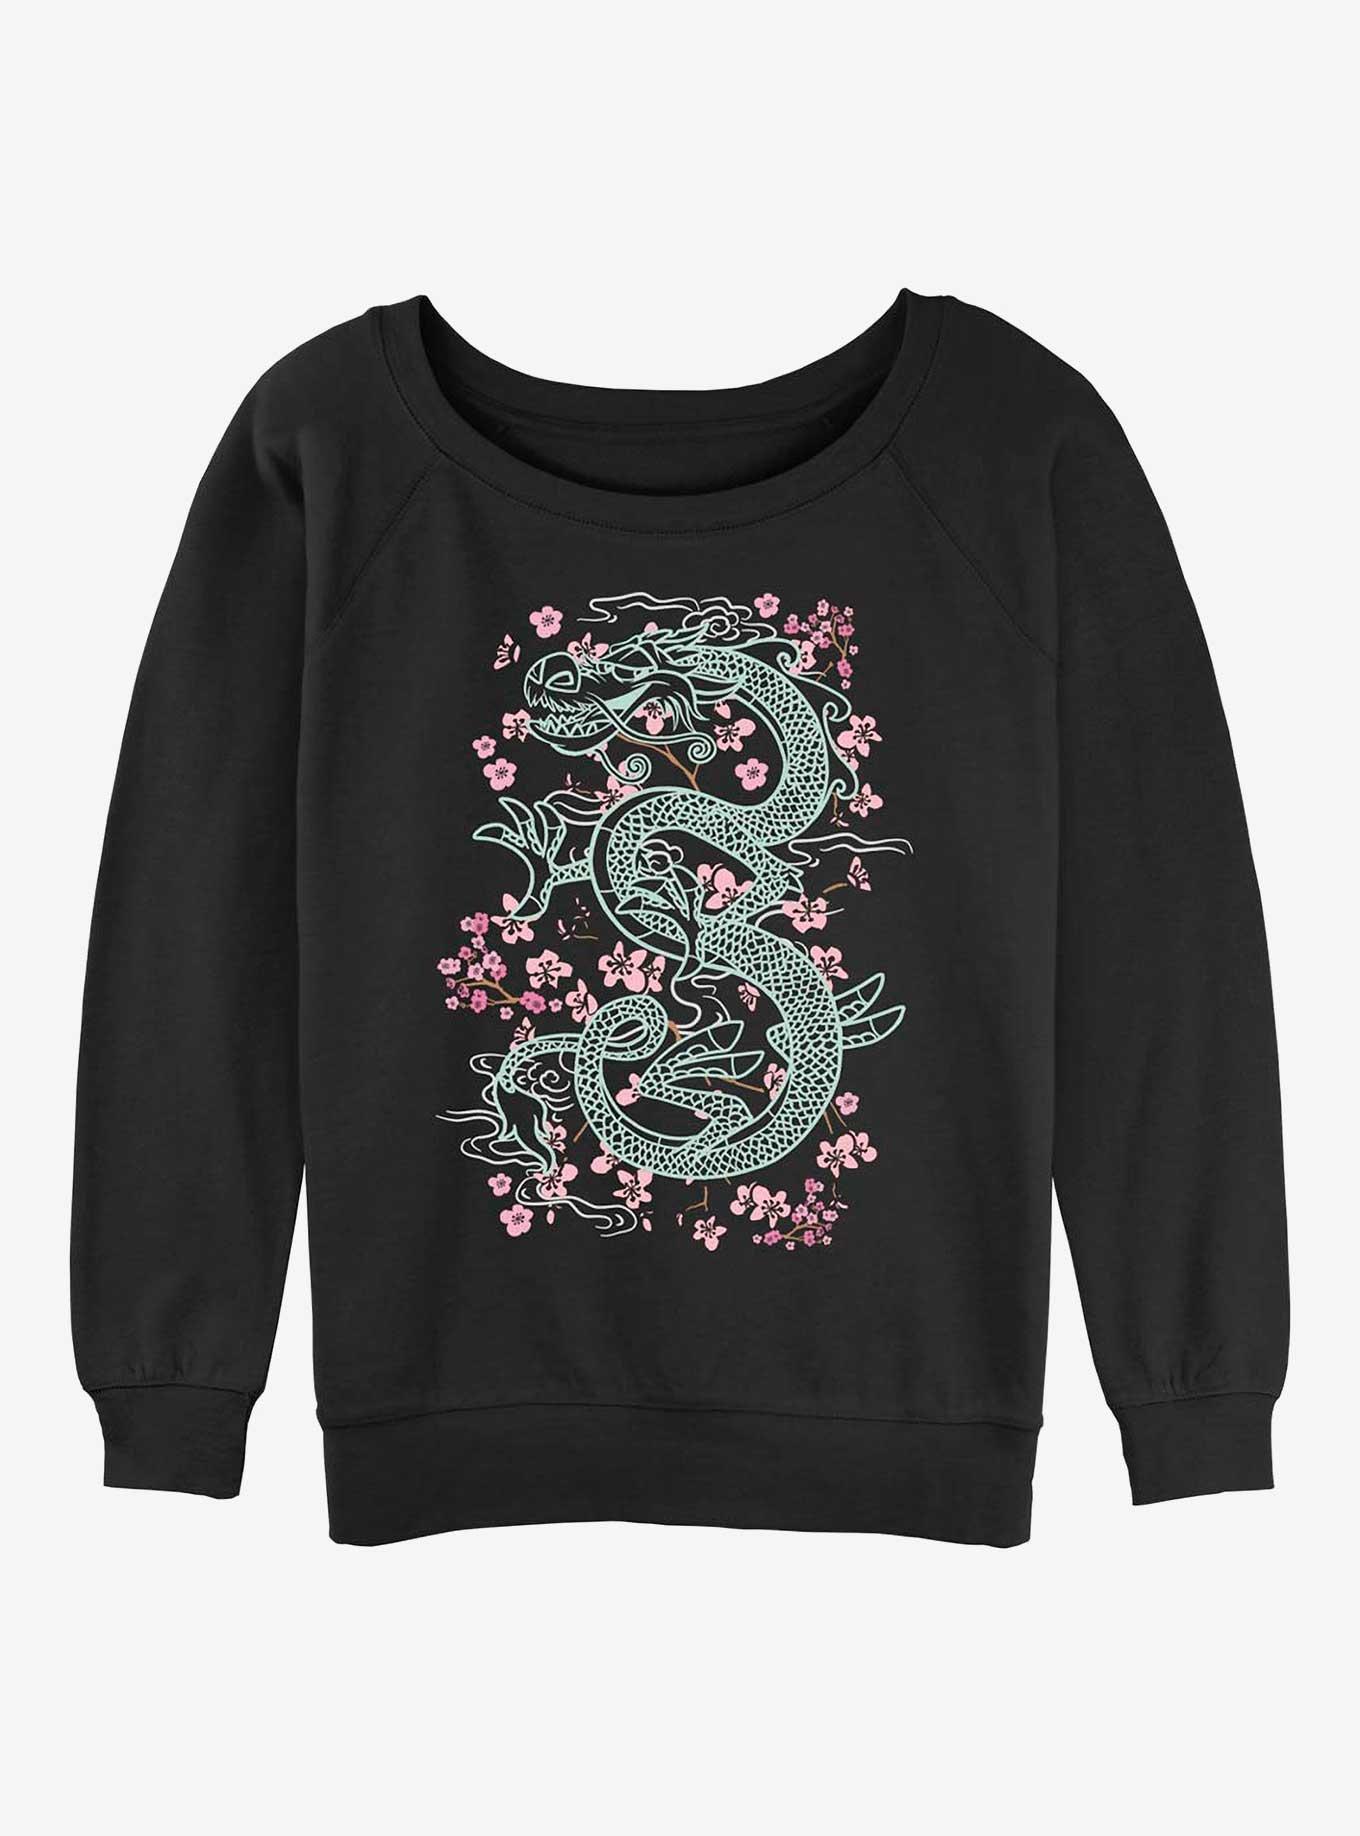 Disney Mulan Mushu Floral Girls Slouchy Sweatshirt, BLACK, hi-res